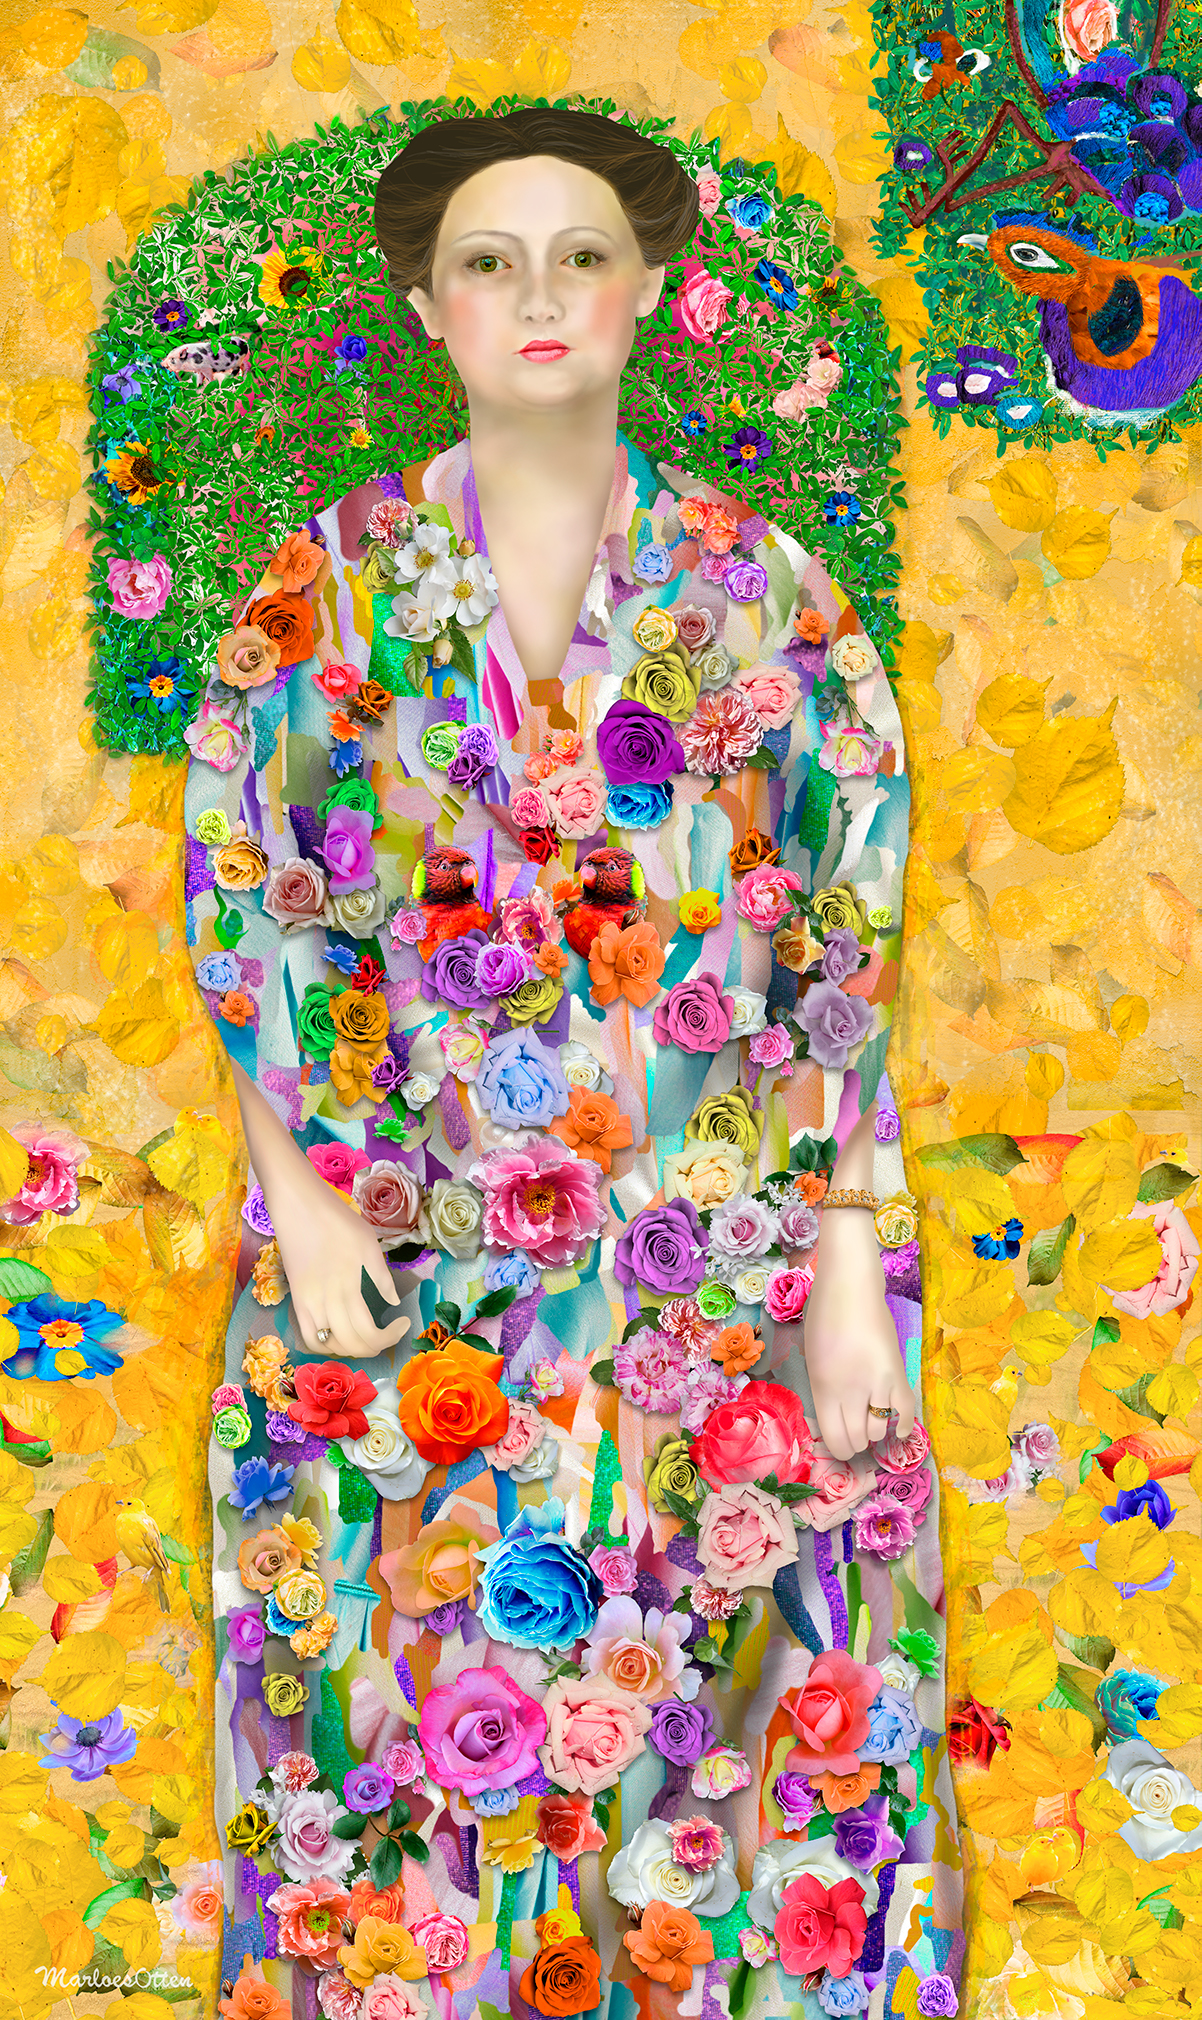 digitaal kunstwerk van Marloes Otten maar Klimt's Eugenia Primavesi. De jurk heeft rozen in vele kleuren. Op de achtergrond zijn gele bladeren zichtbaar met link en rechts een kuikentje